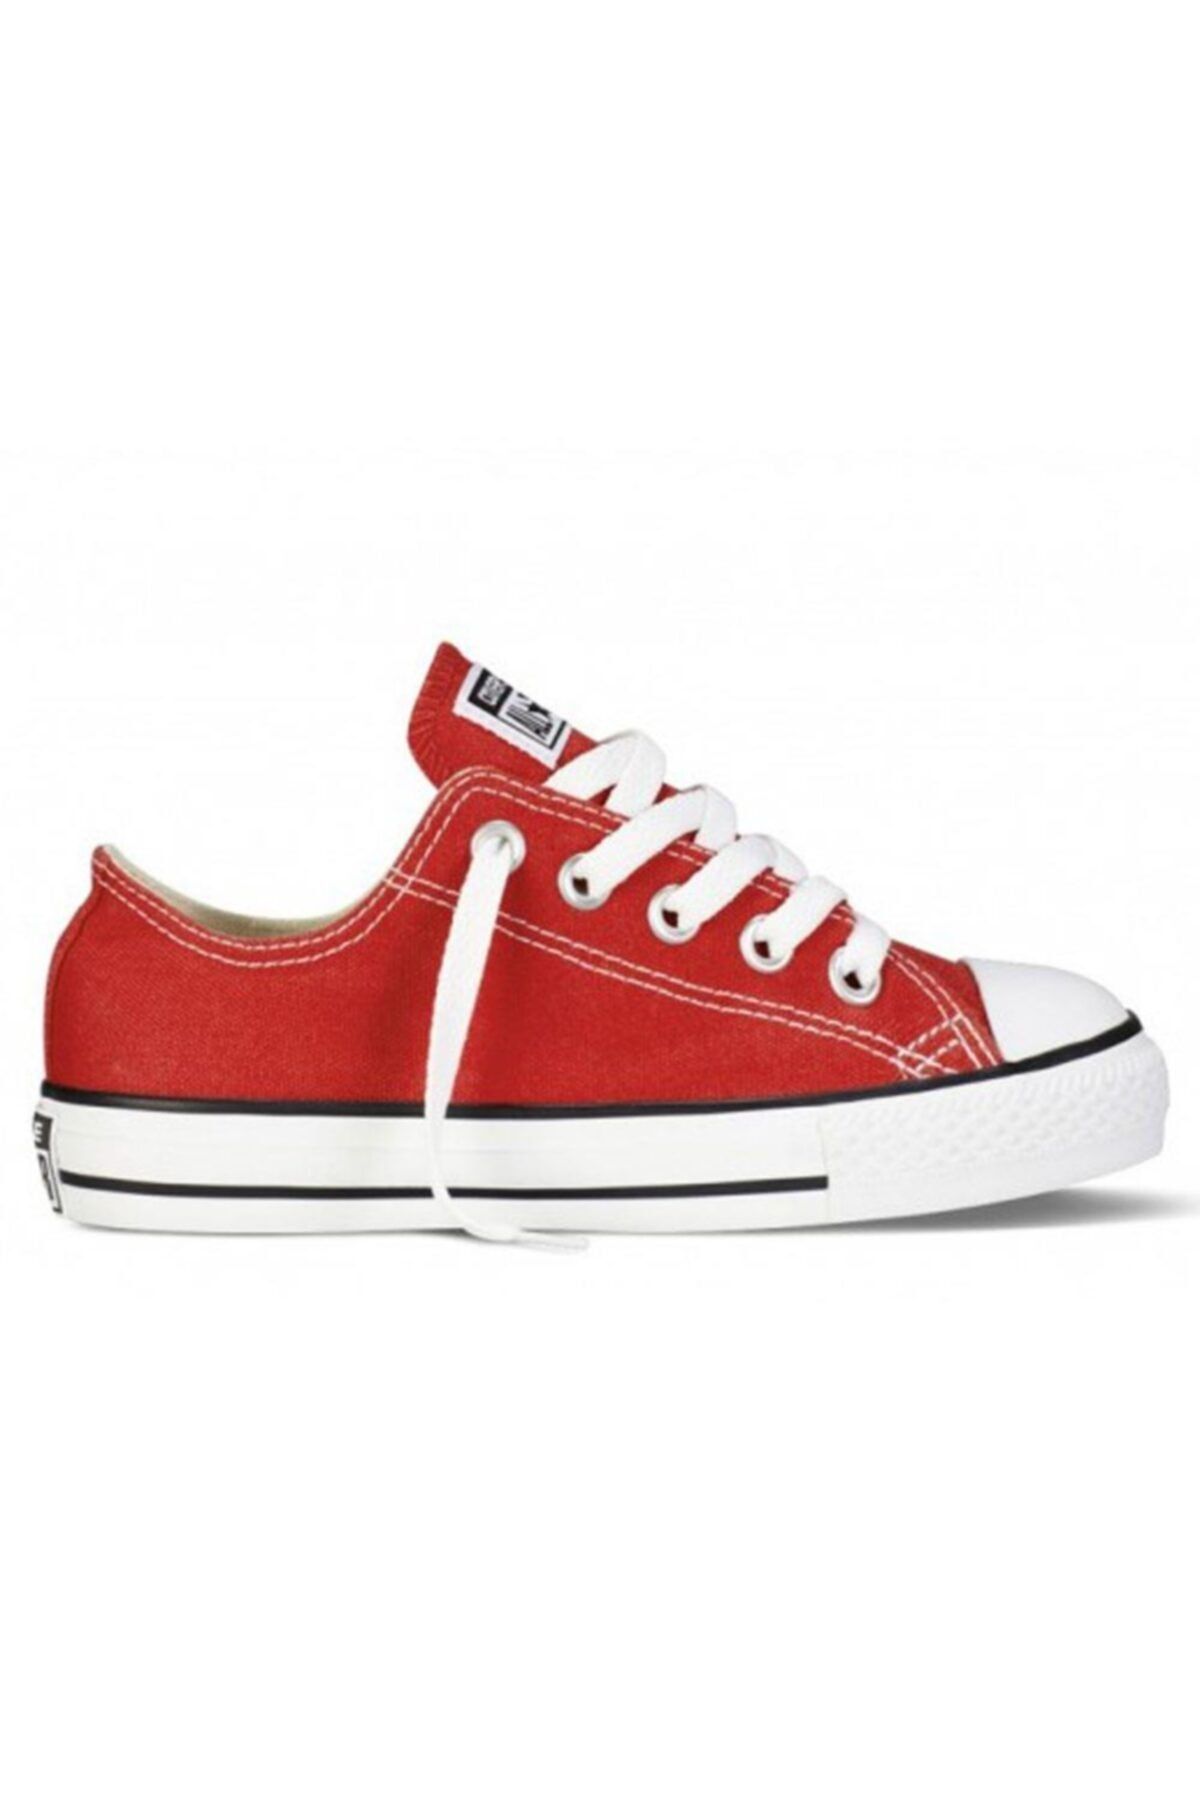 Converse Unisex Çocuk Kırmızı Allstar Ayakkabısı